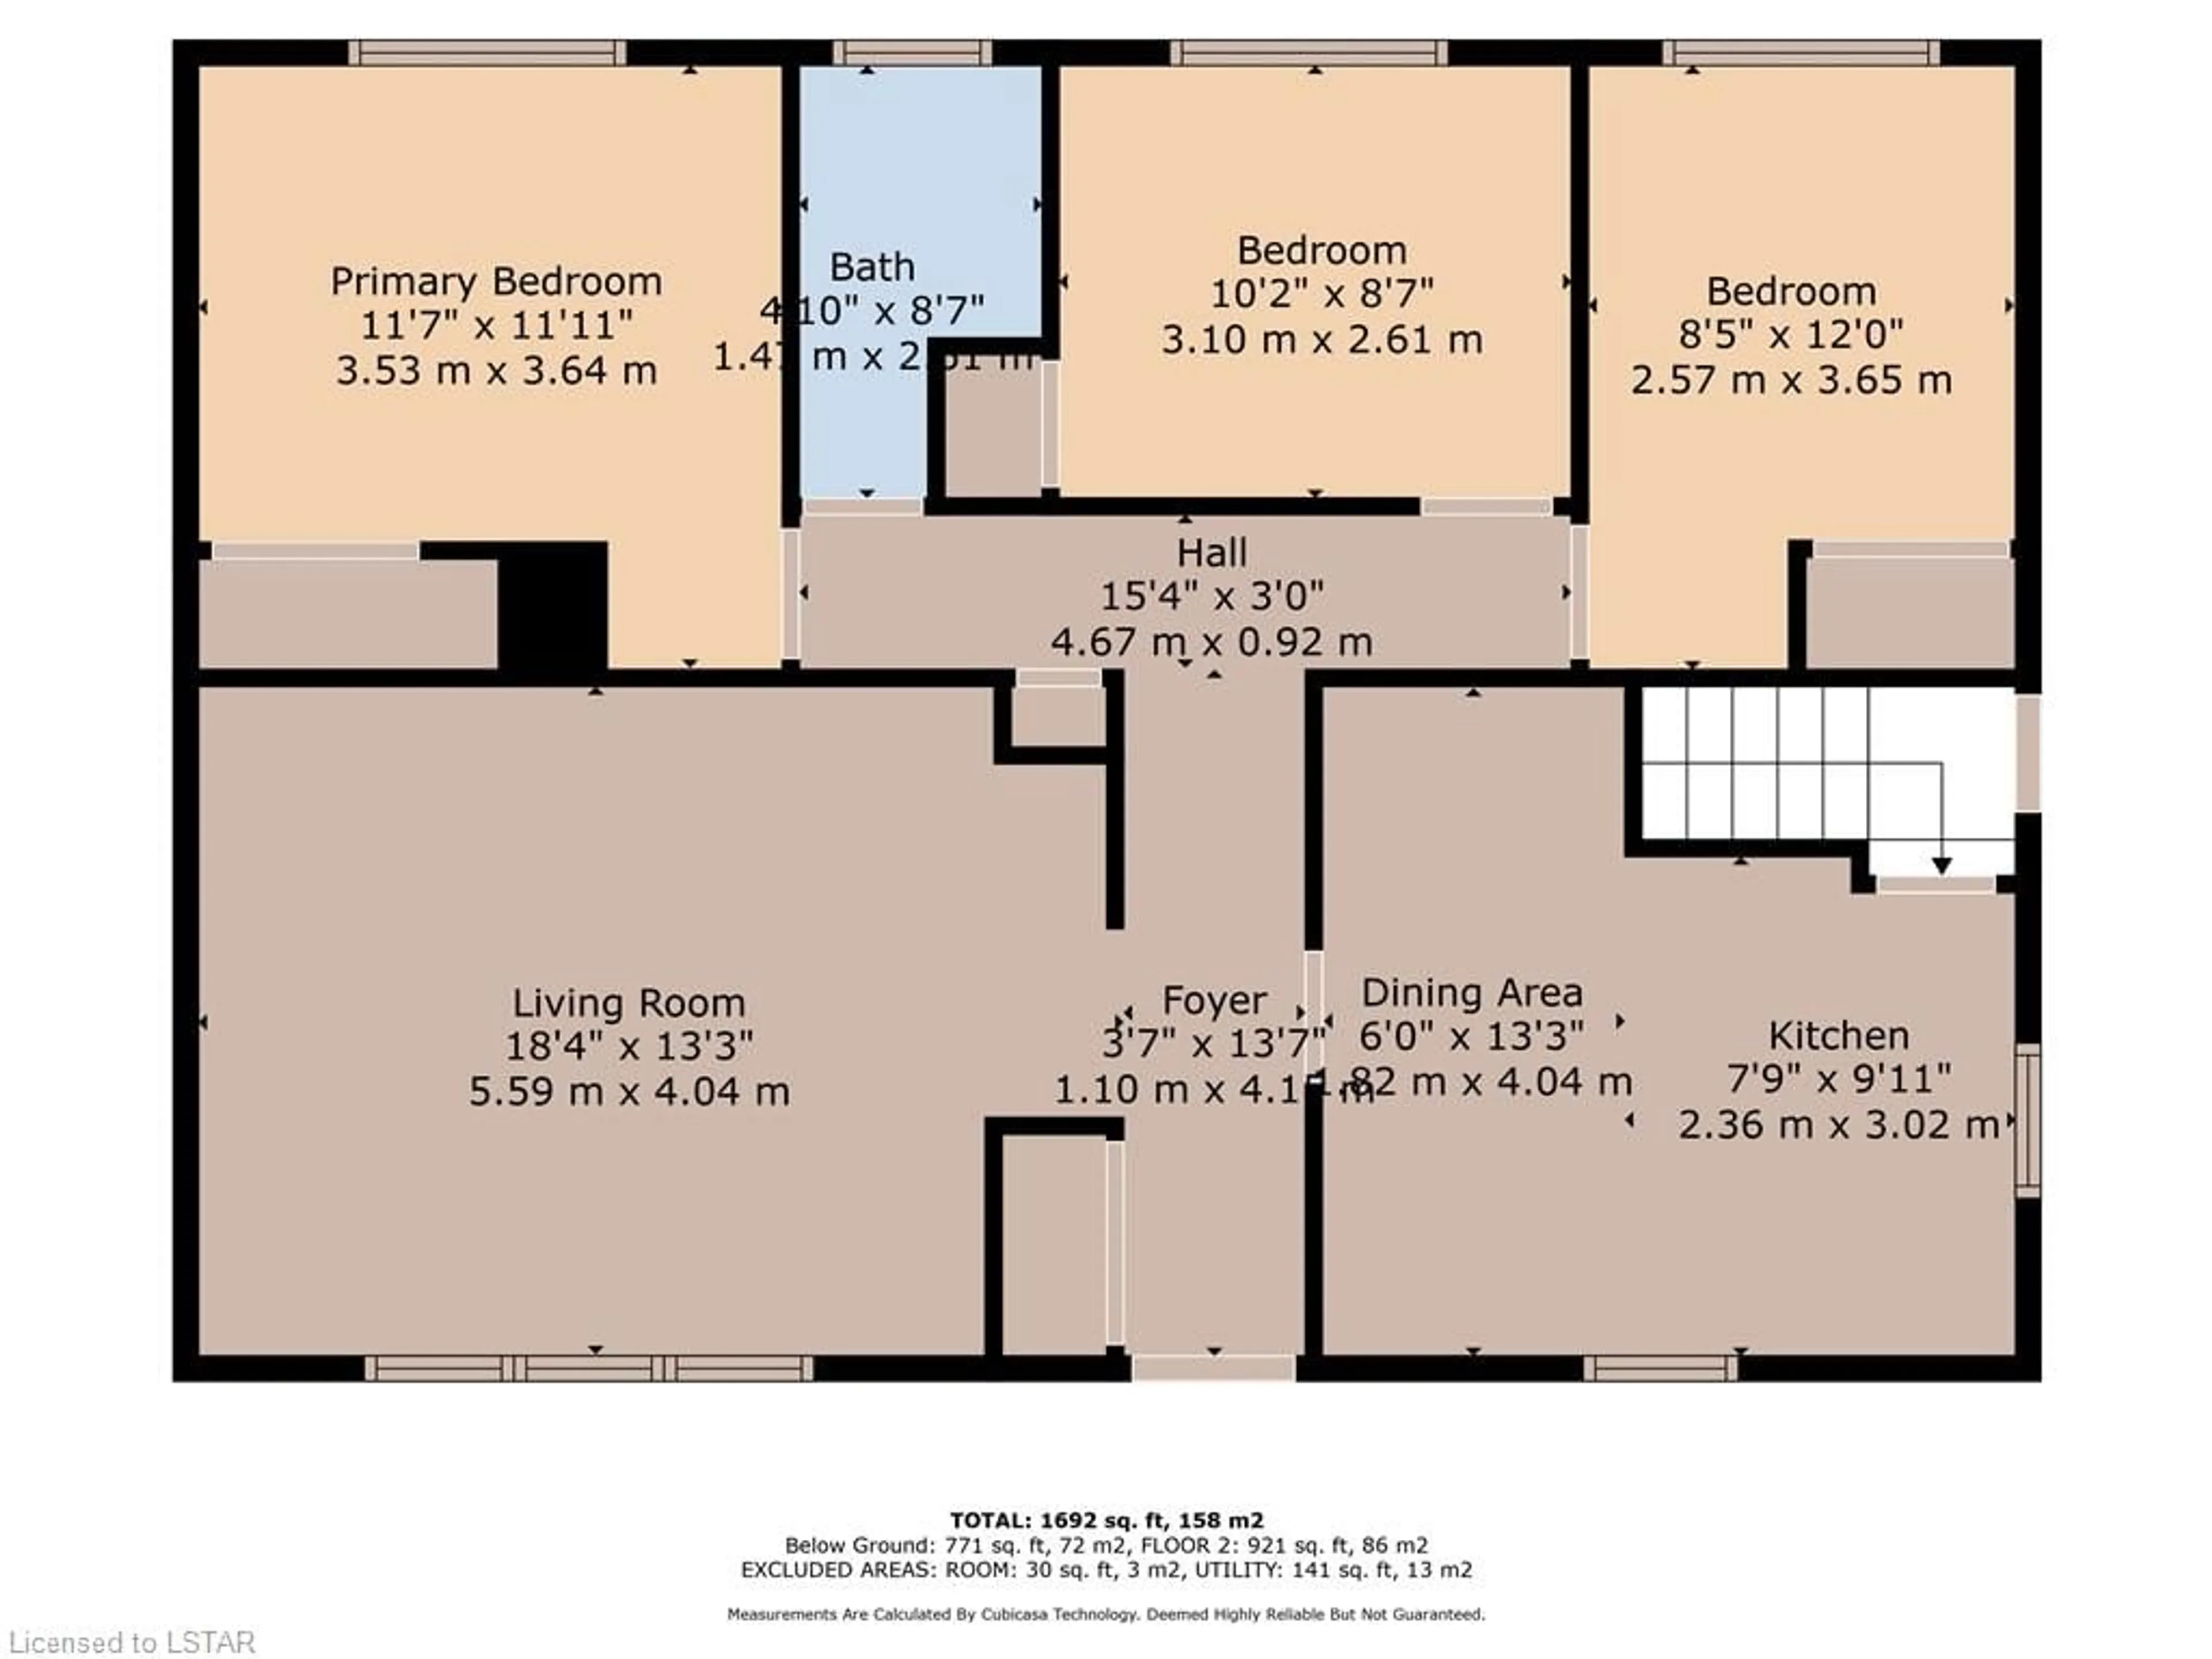 Floor plan for 1175 Patann Dr, London Ontario N5V 2J2